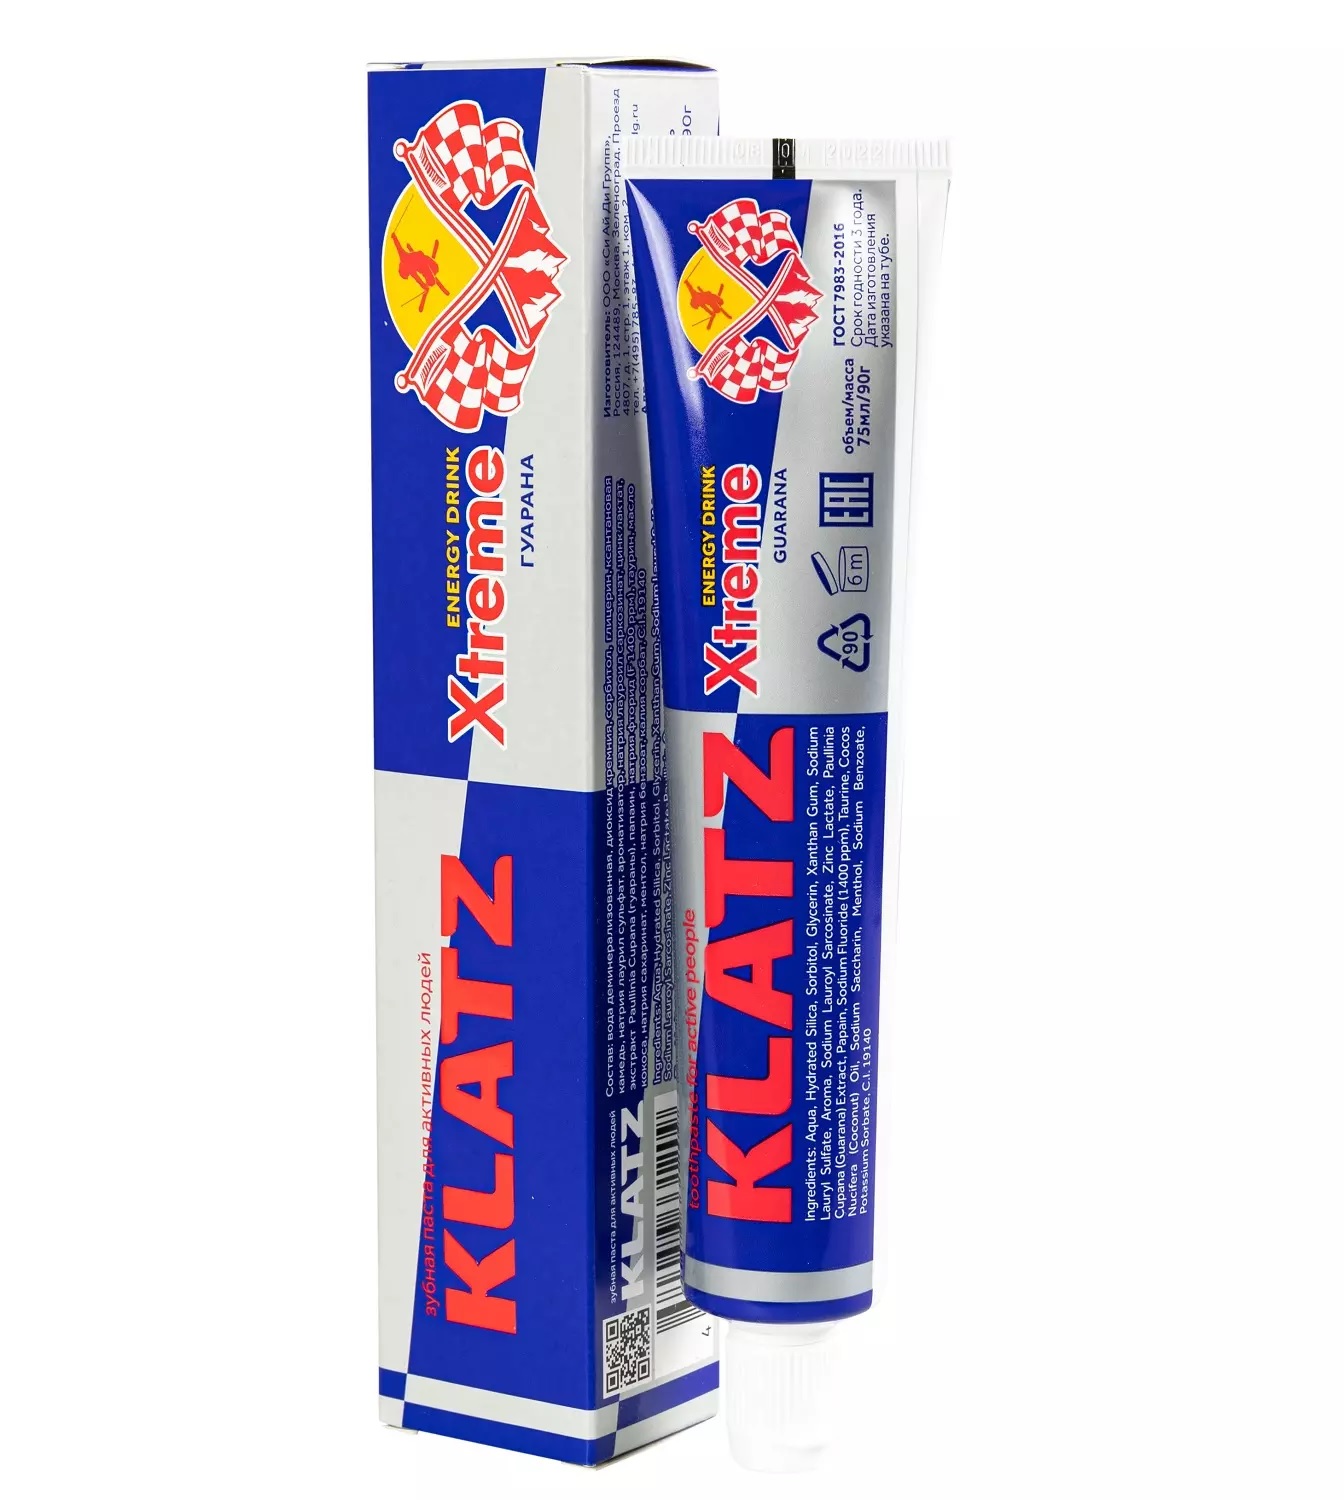 Паста зубная Klatz X-treme Energy Drink для активных людей, гуарана, 75 мл зубная паста для активных людей klatz x treme energy drink гуарана 75мл